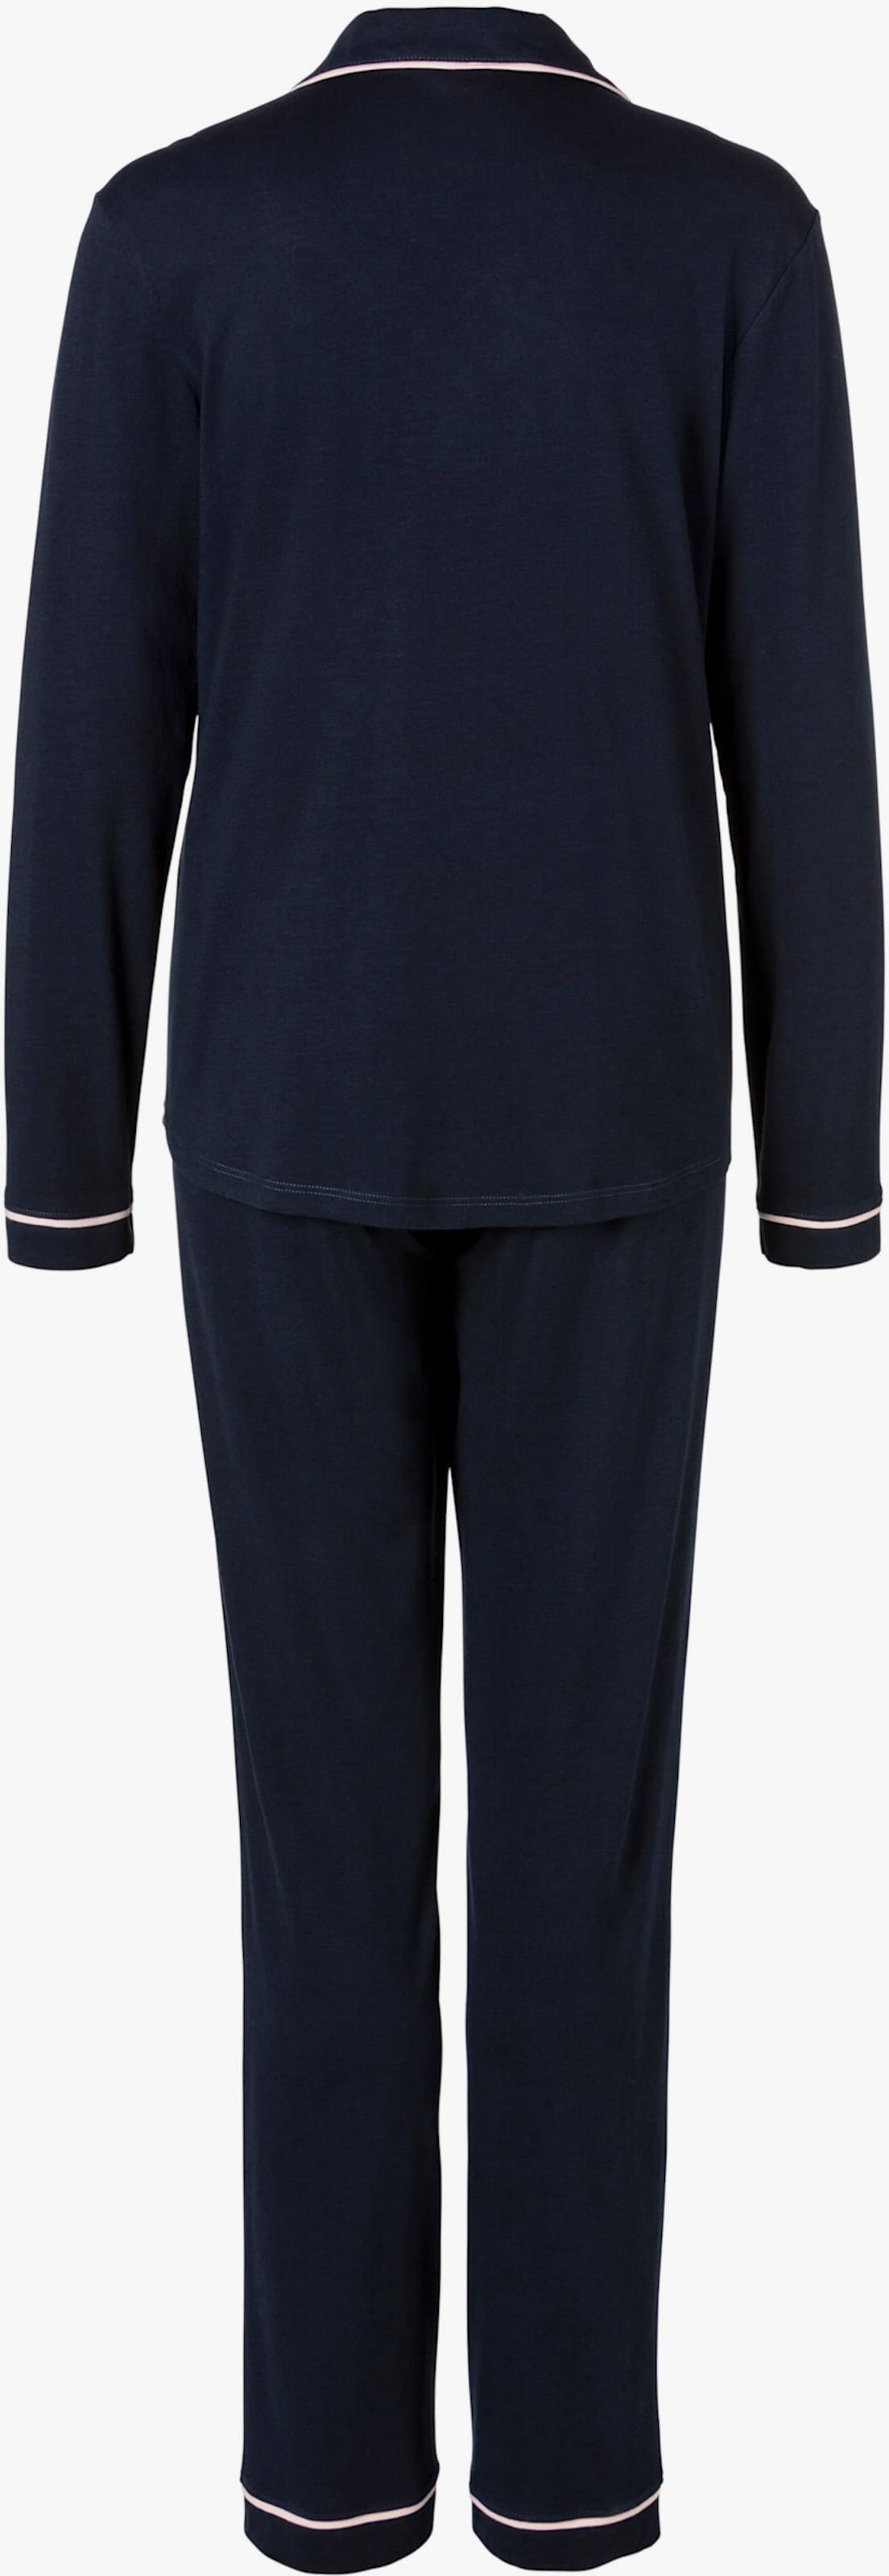 s.Oliver Pyjama - nachtblau